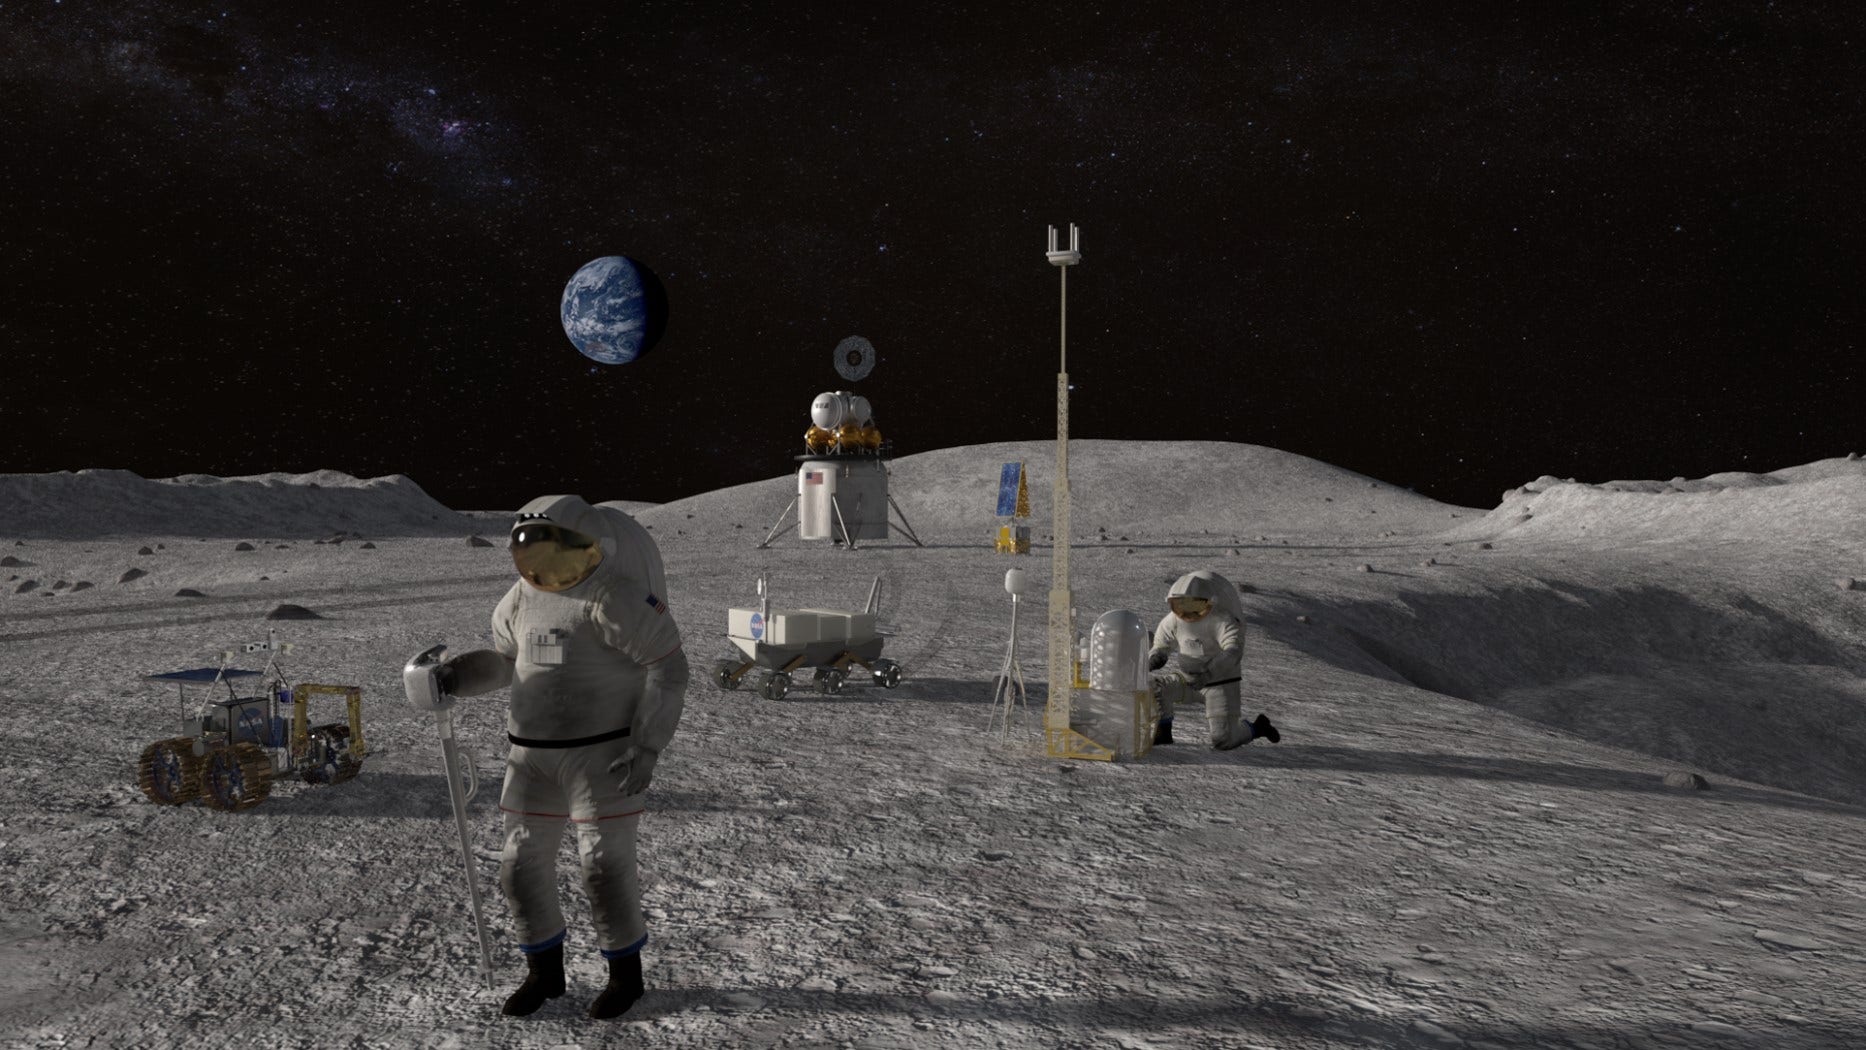 ناسا توضح بالتفصيل كيف سيتم إنفاق 28 مليار دولار لإعادة رواد الفضاء إلى القمر في عام 2024